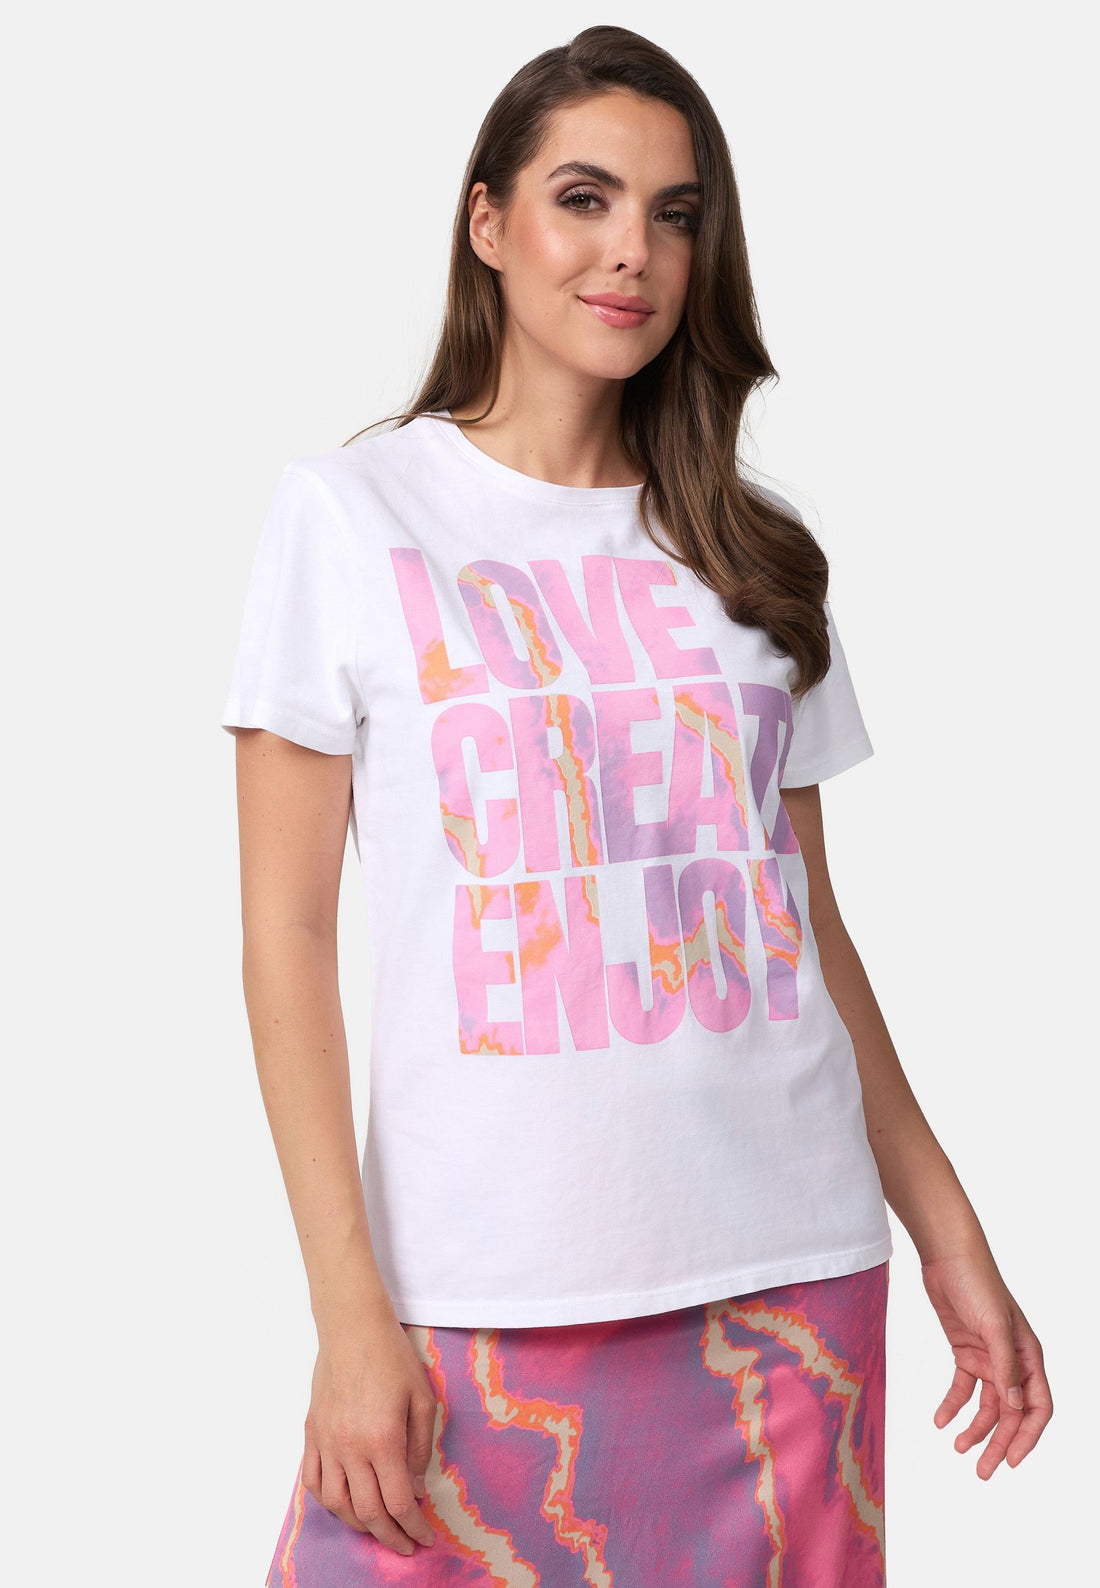 Gewaschenes T-Shirt Mit Love Create Enjoy Druck